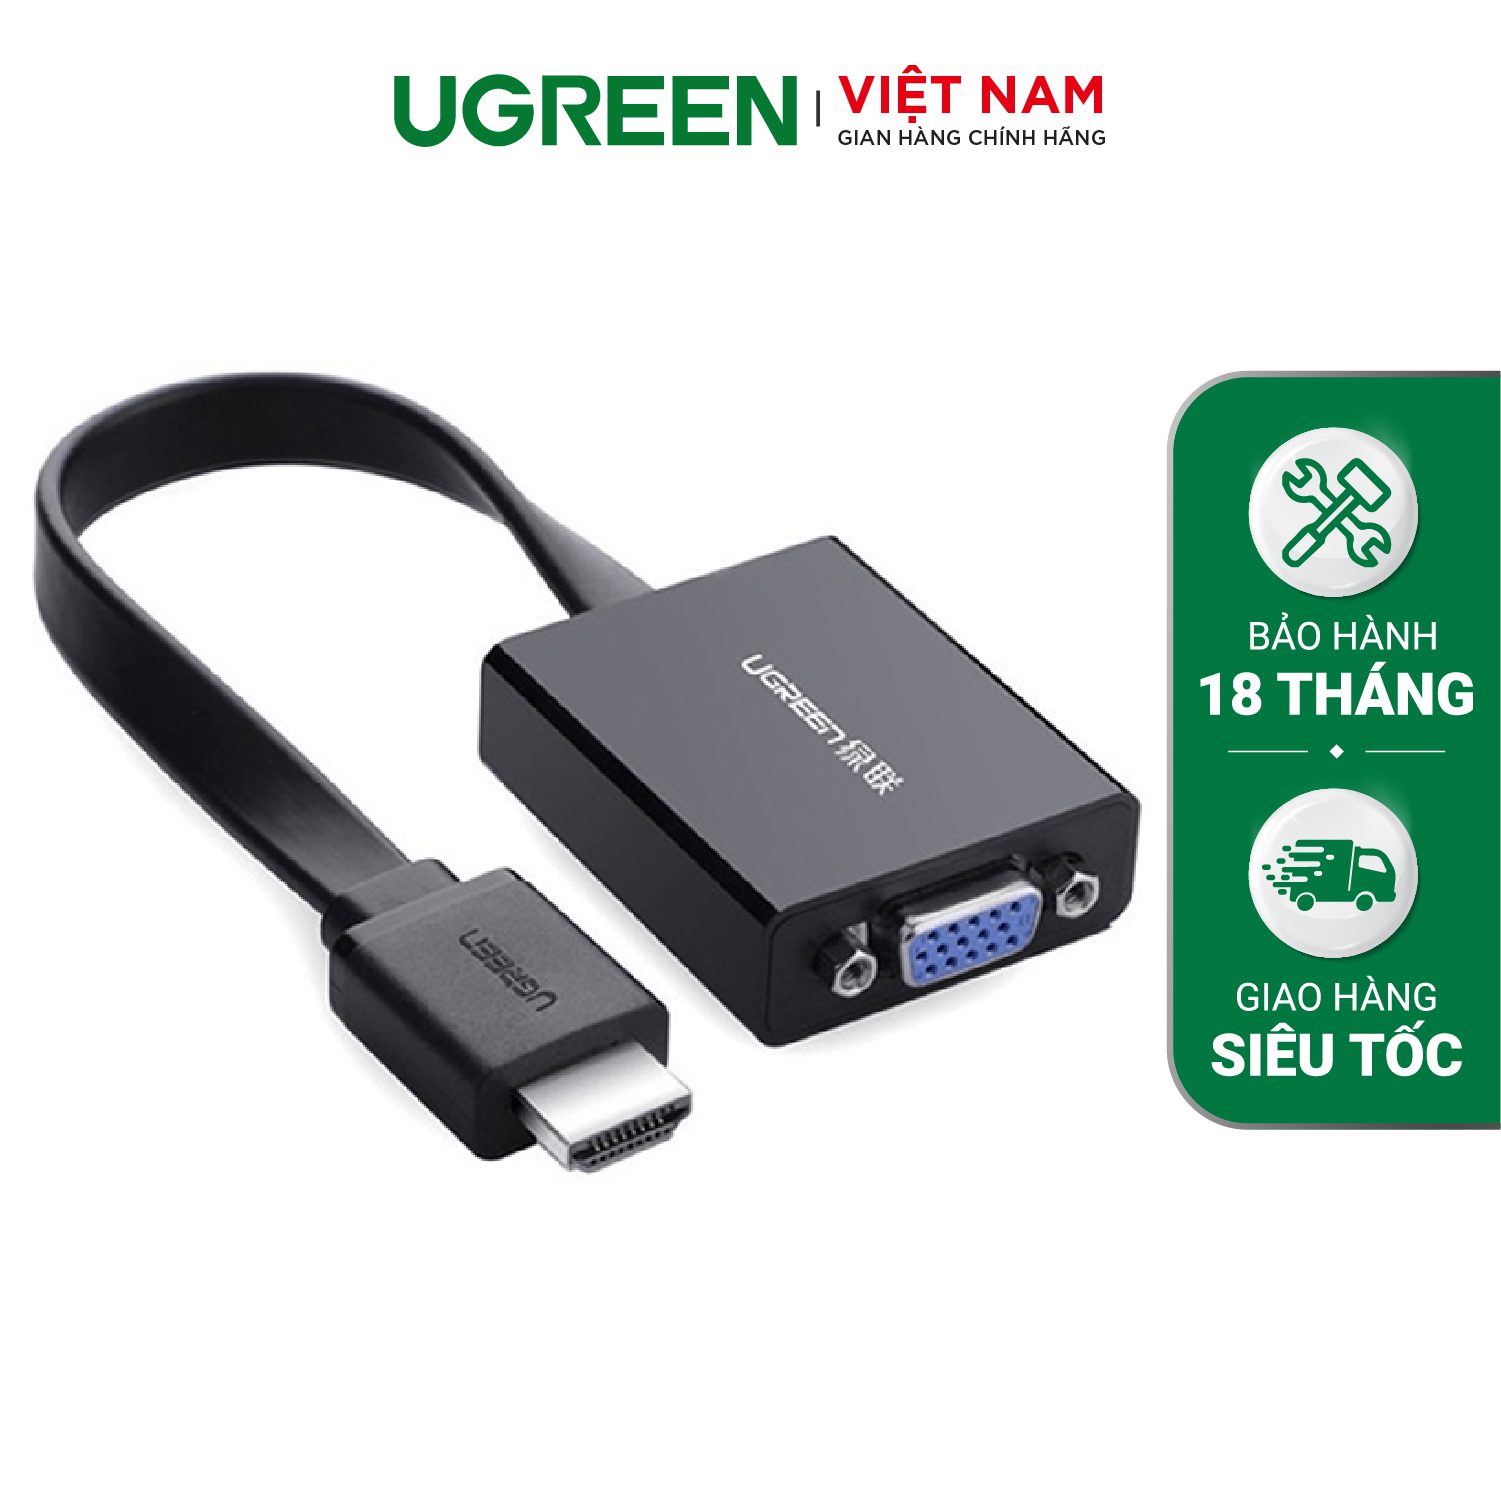 Cáp chuyển đổi HDMI sang VGA UGREEN MM103 dây dẹt tích hợp cổng Audio 3.5mm + Micro USB hỗ trợ nguồn ngoài – Ugreen Việt Nam